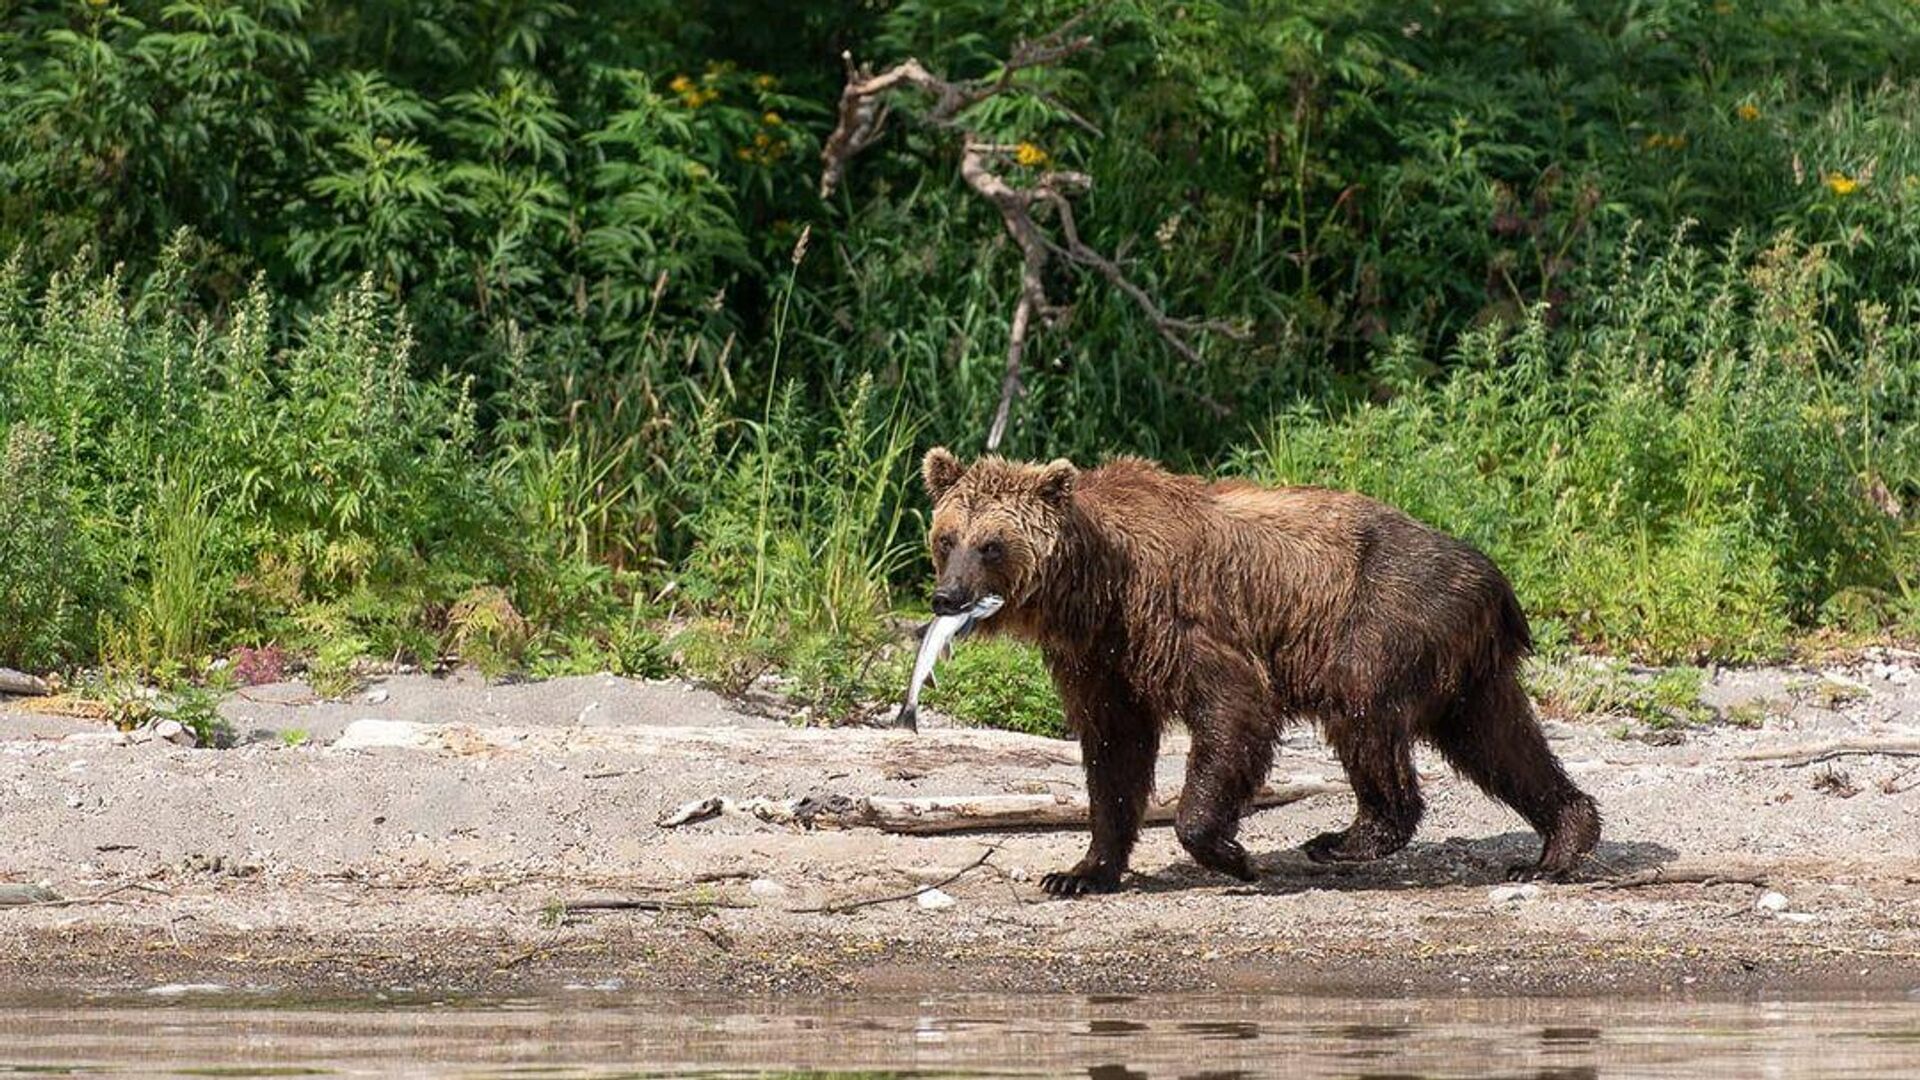 Репортаж про коноплю и медведей все о конопле фото бесплатно